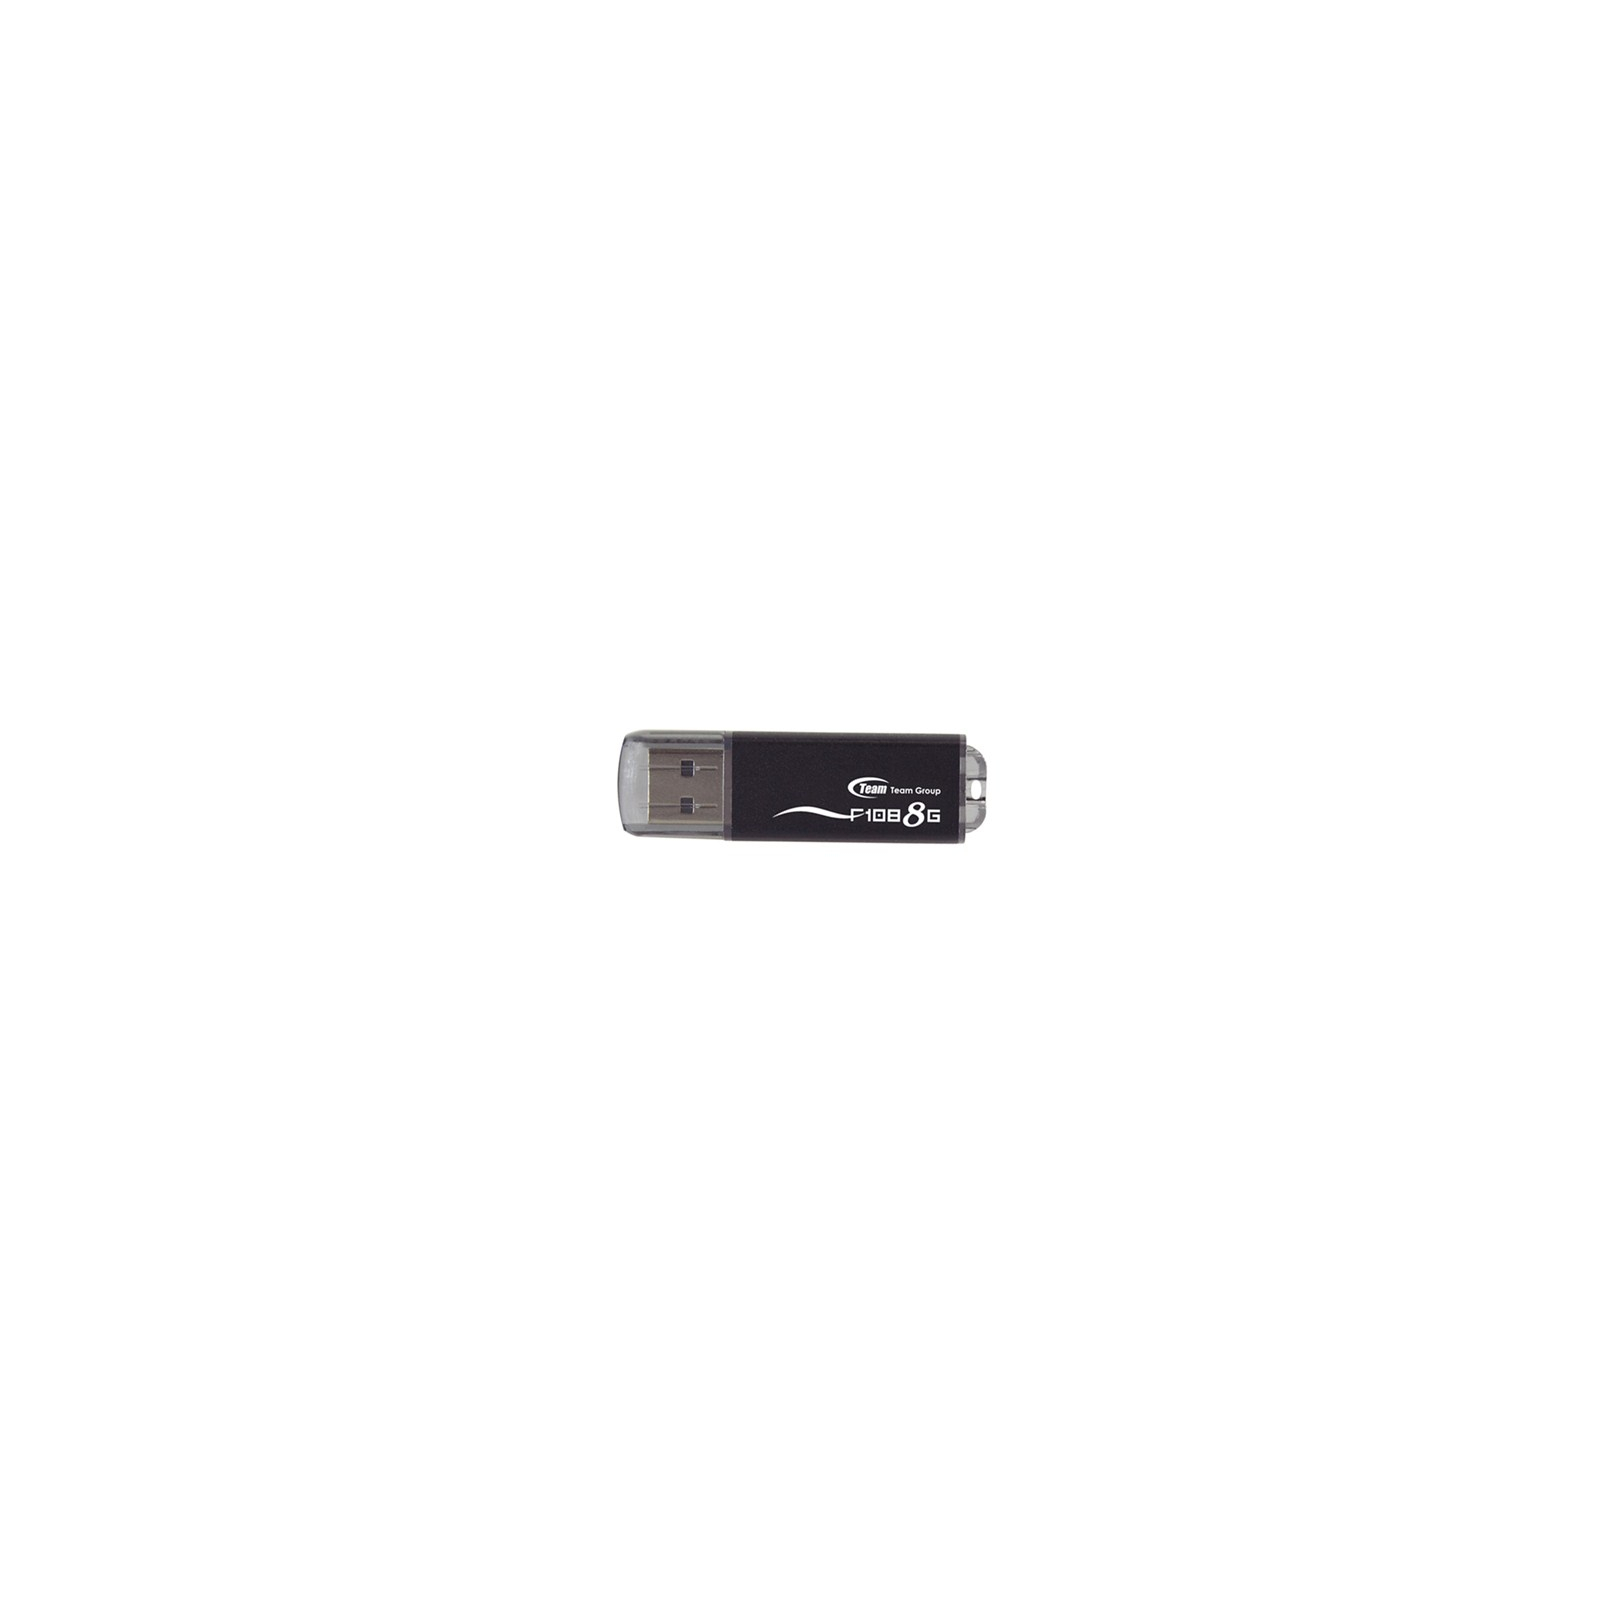 USB флеш накопитель Team 8Gb F108 black (TF1088GB01 / TG008GF108BX)